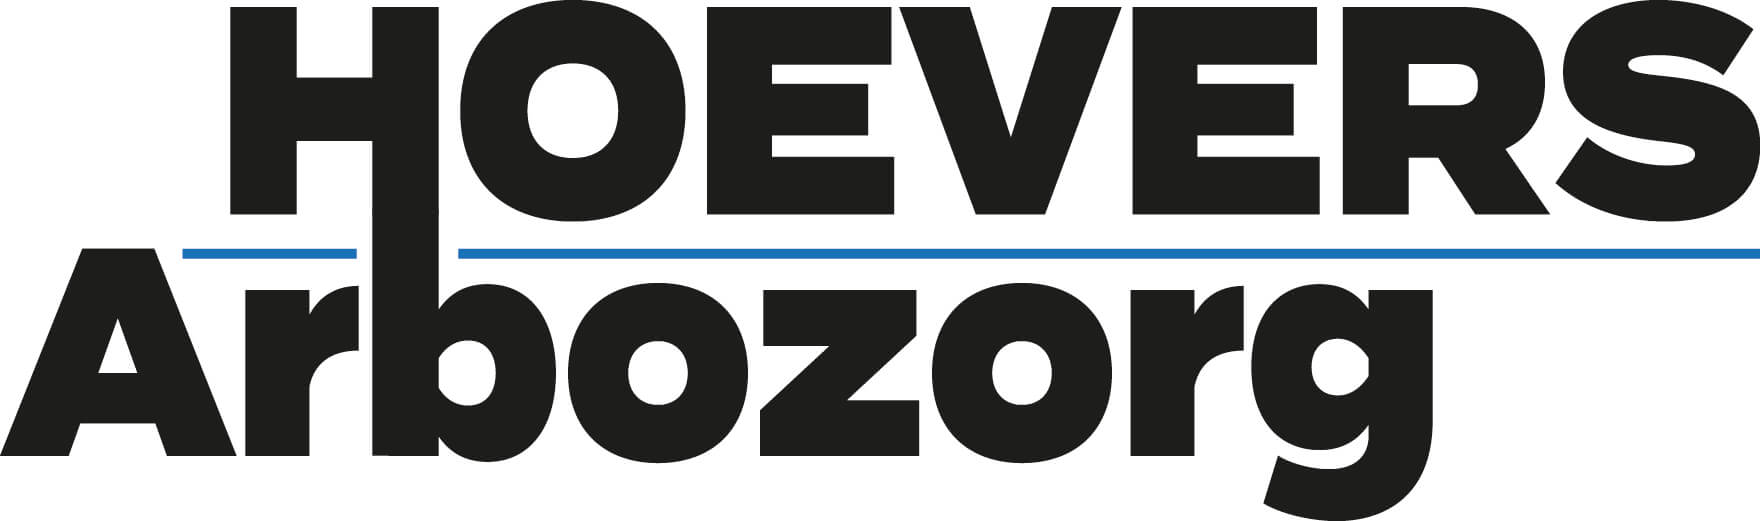 Logo Hoevers Arbozorg